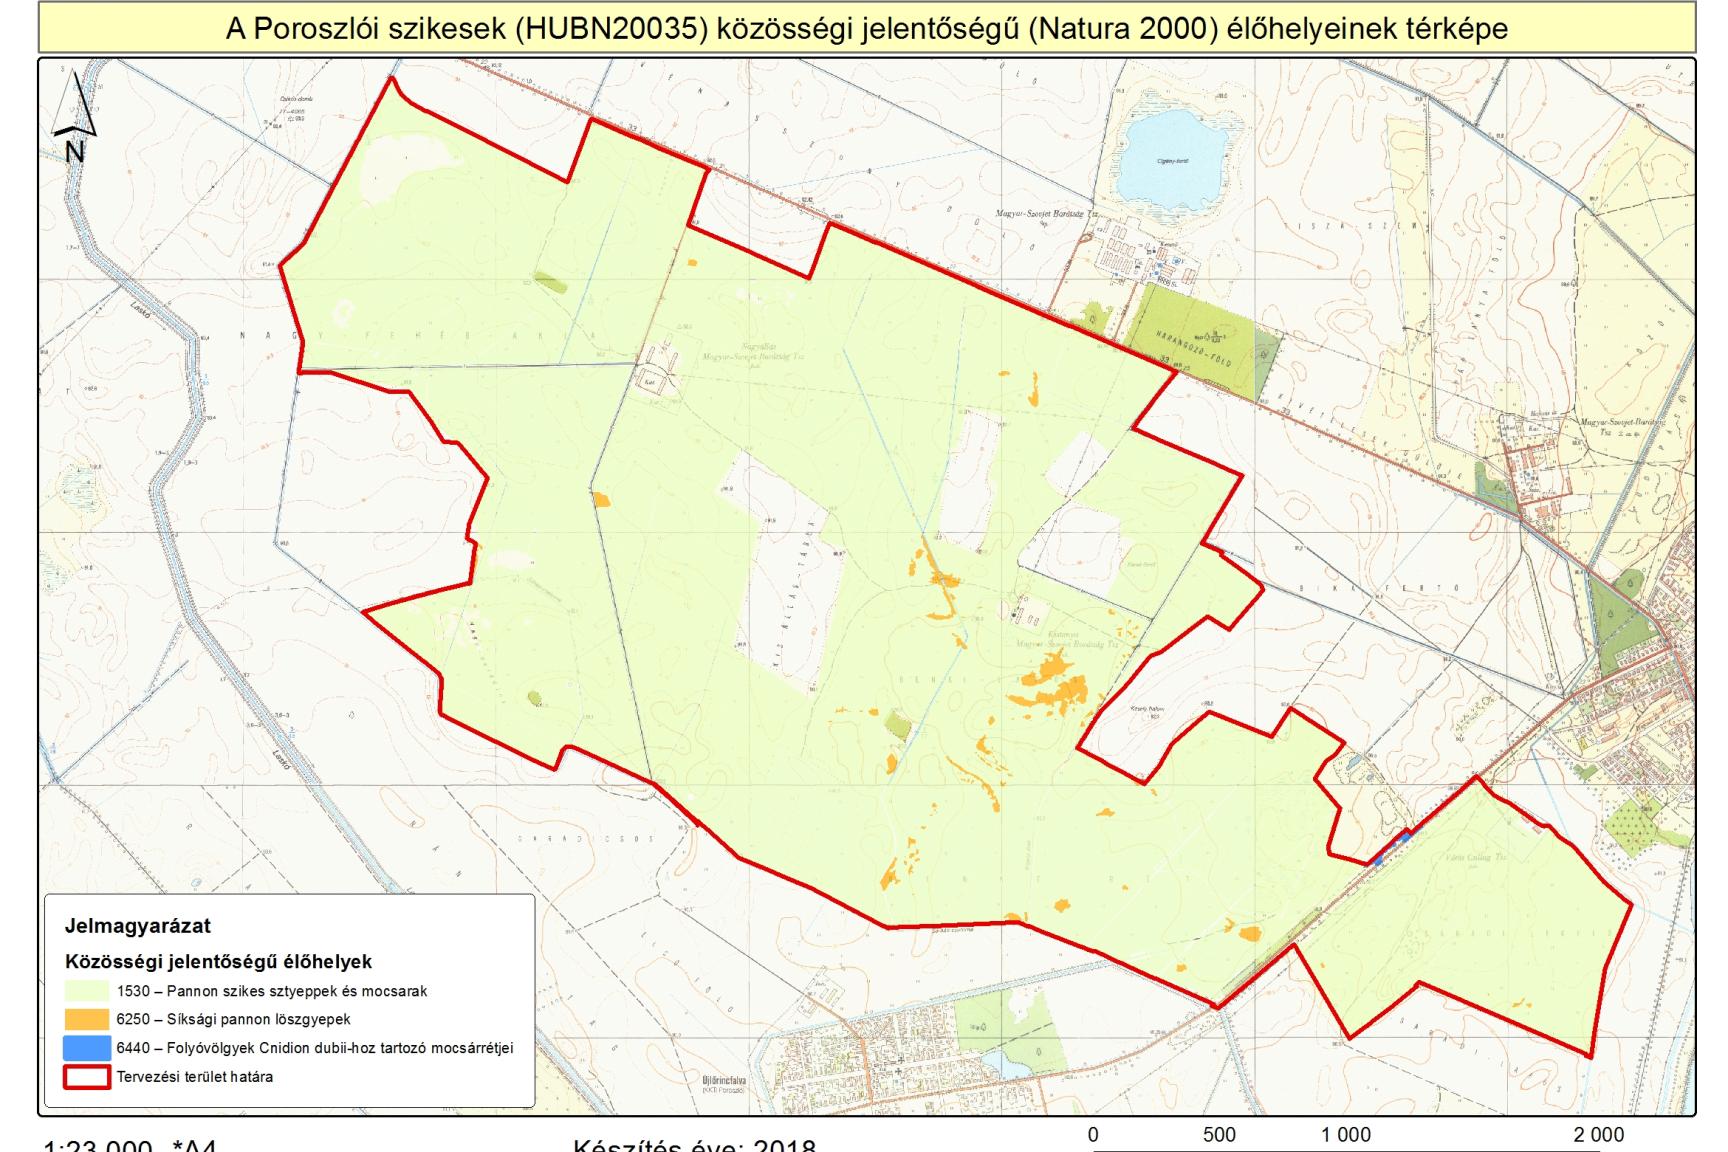 8. A tervezési terület közösségi jelentőségű (Natura 2000) élőhelytérképe